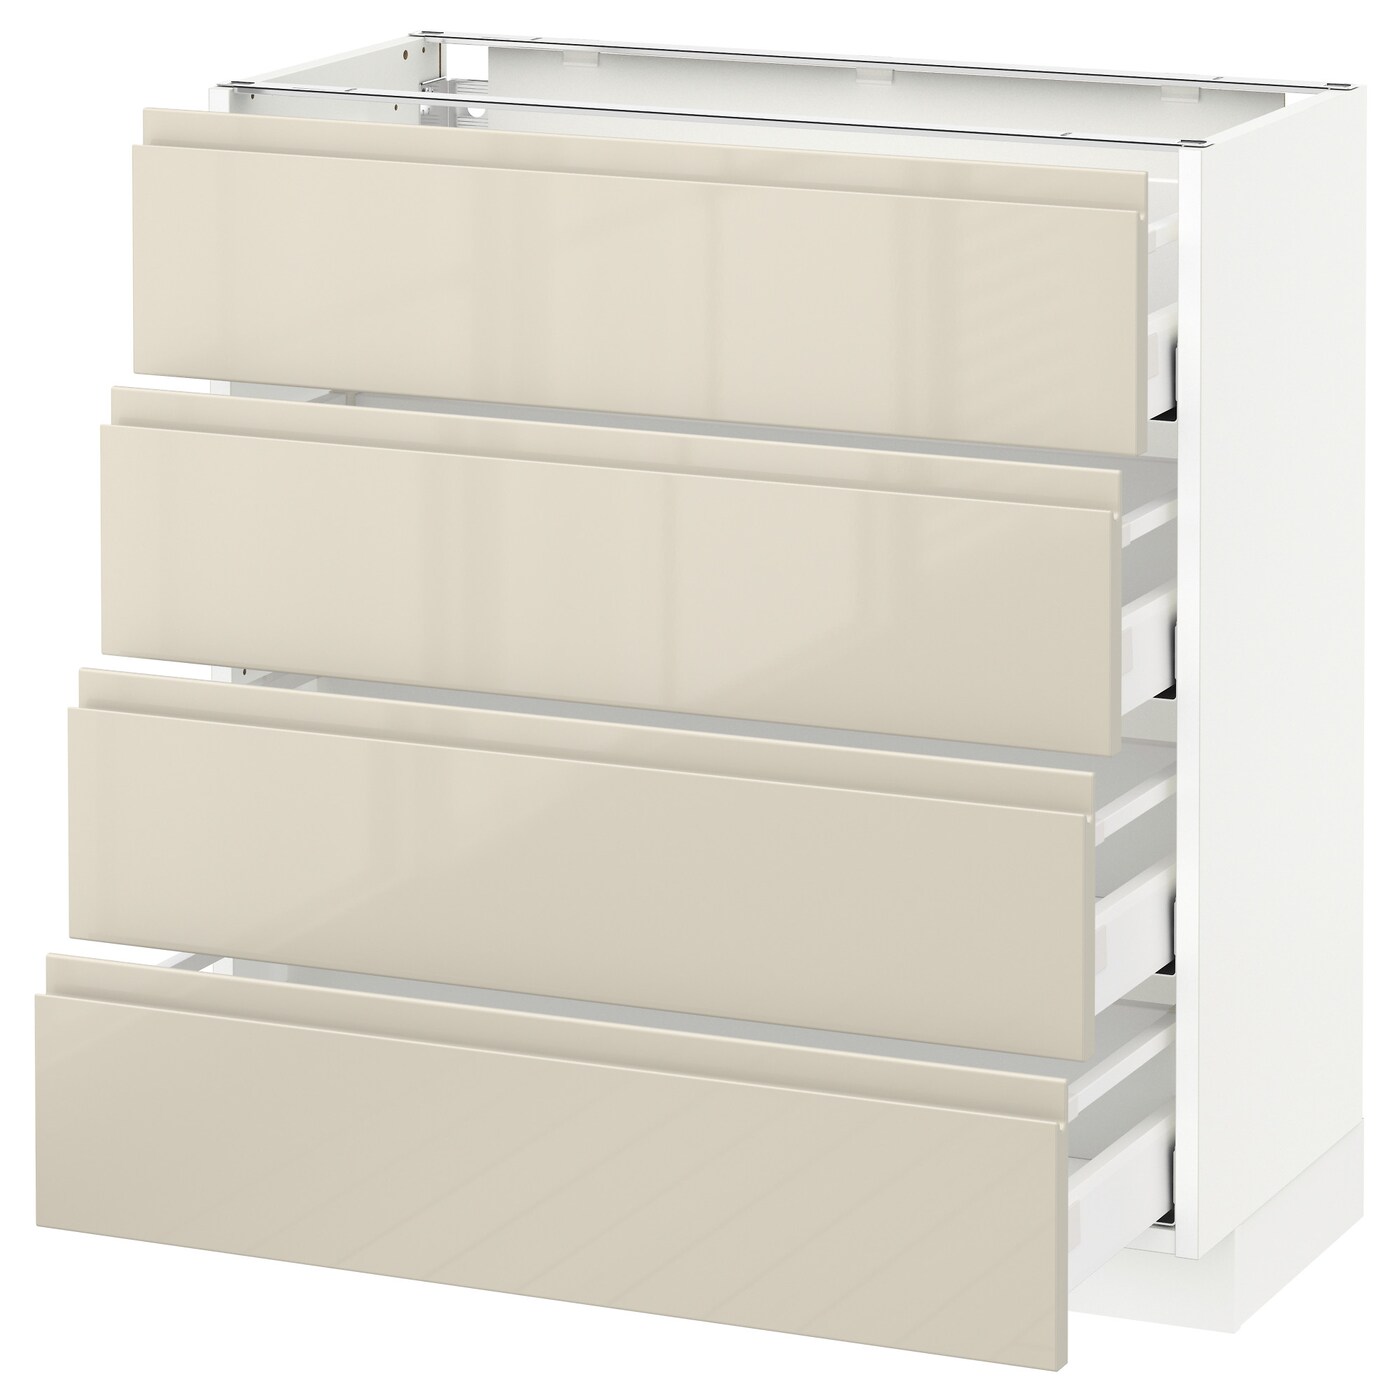 Напольный кухонный шкаф  - IKEA METOD MAXIMERA, 88x39x80см, белый/бежевый, МЕТОД МАКСИМЕРА ИКЕА